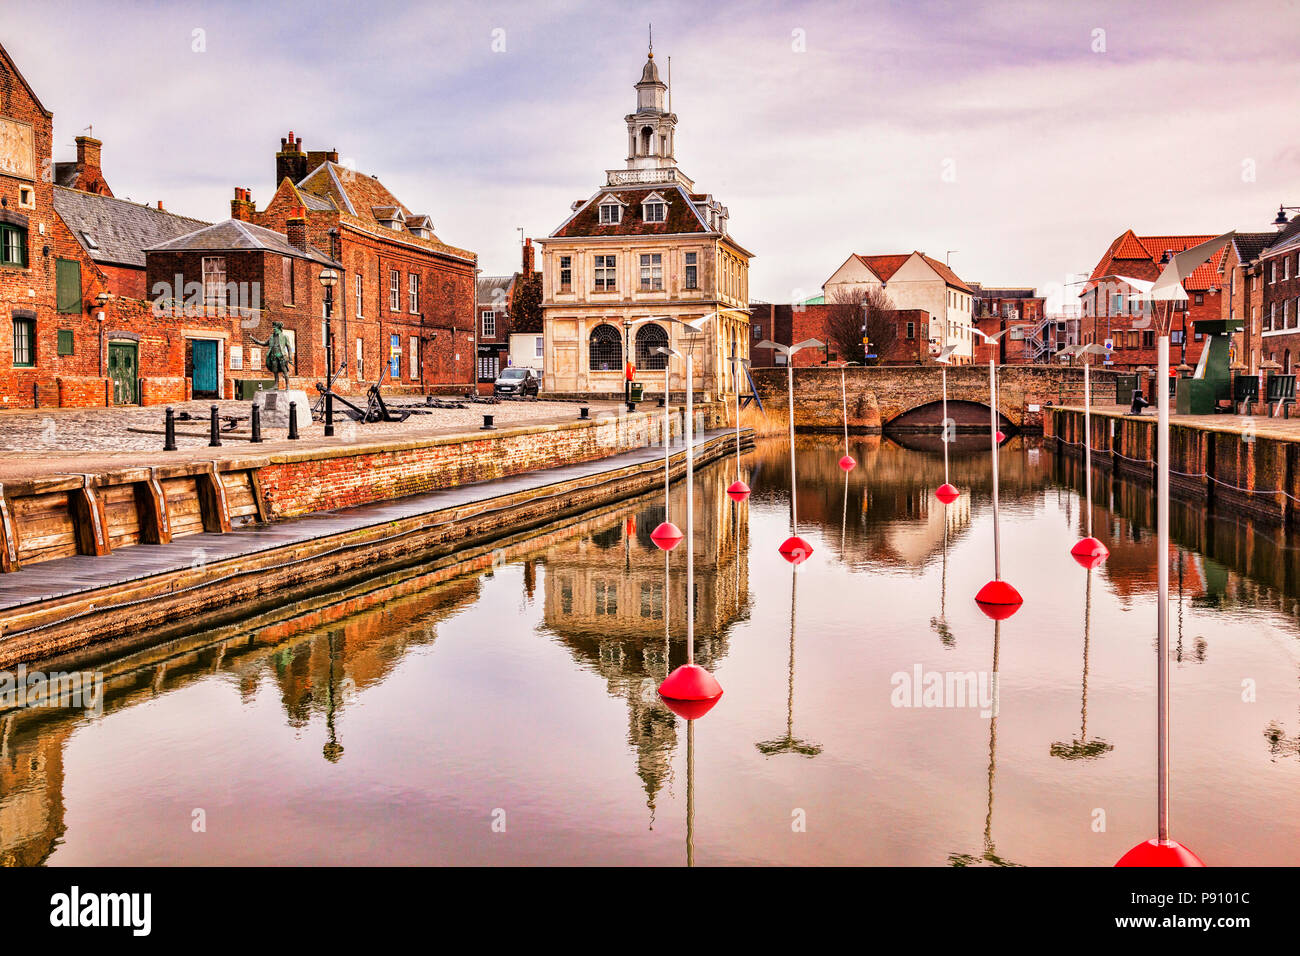 20 Février 2015 : Quai Purfleet, King's Lynn, Norfolk, Angleterre - Artworks sont conjointement avec la ville d'Amiens, dans le cadre de... Banque D'Images